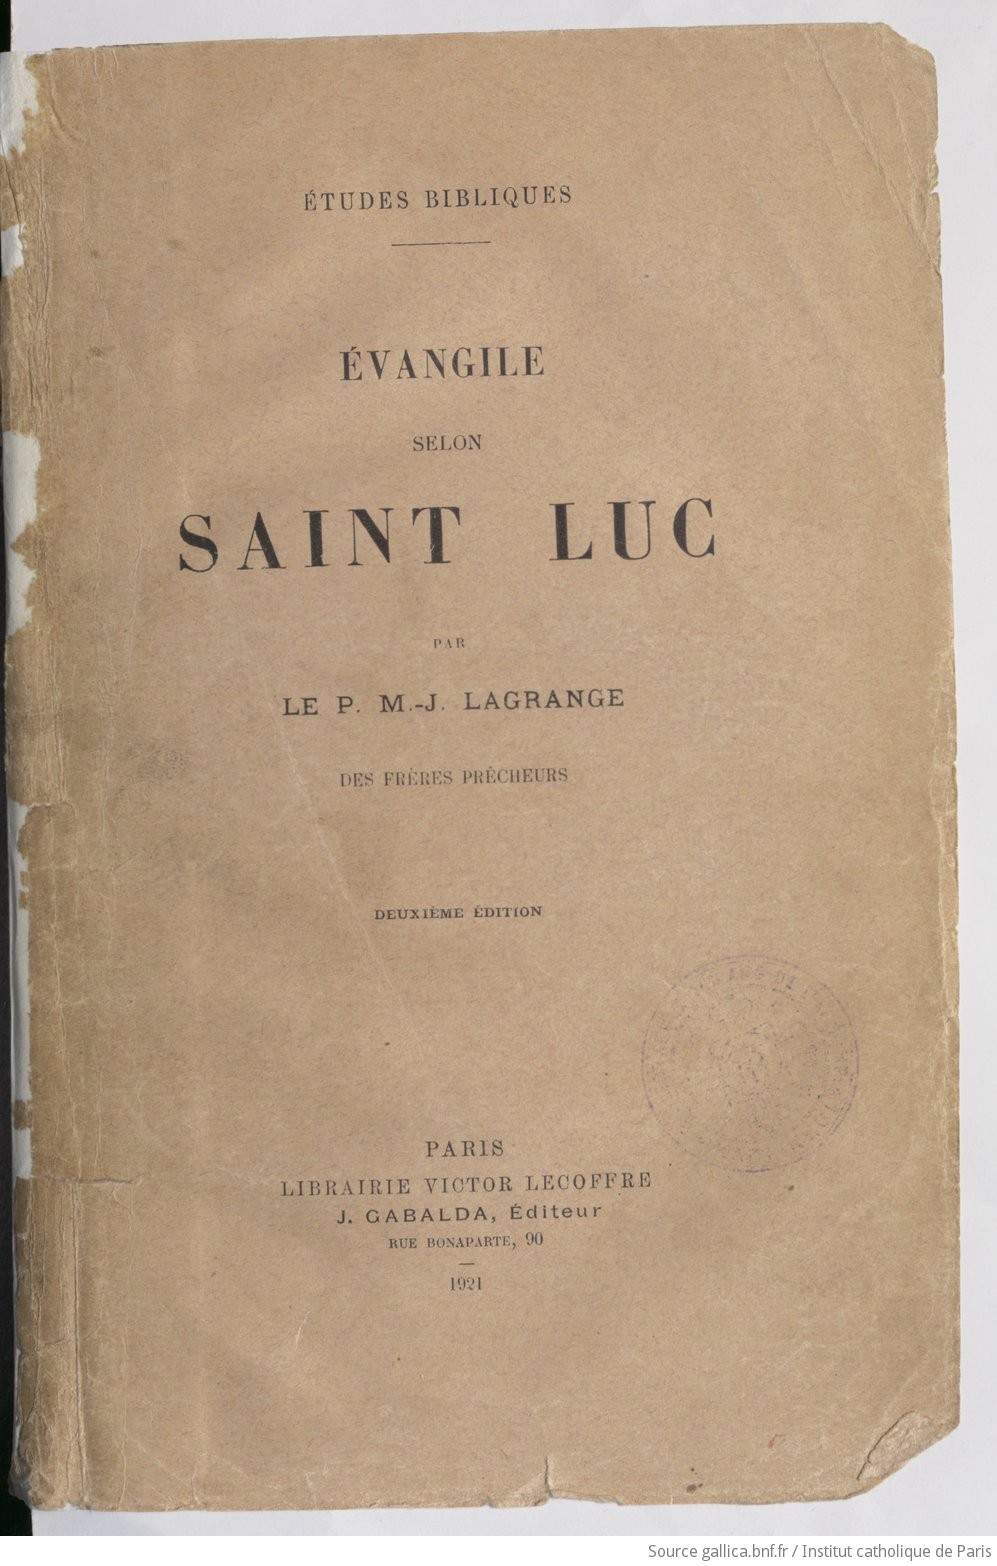 Évangile selon saint Luc, par le P. M.-J. Lagrange, des Frères prêcheurs